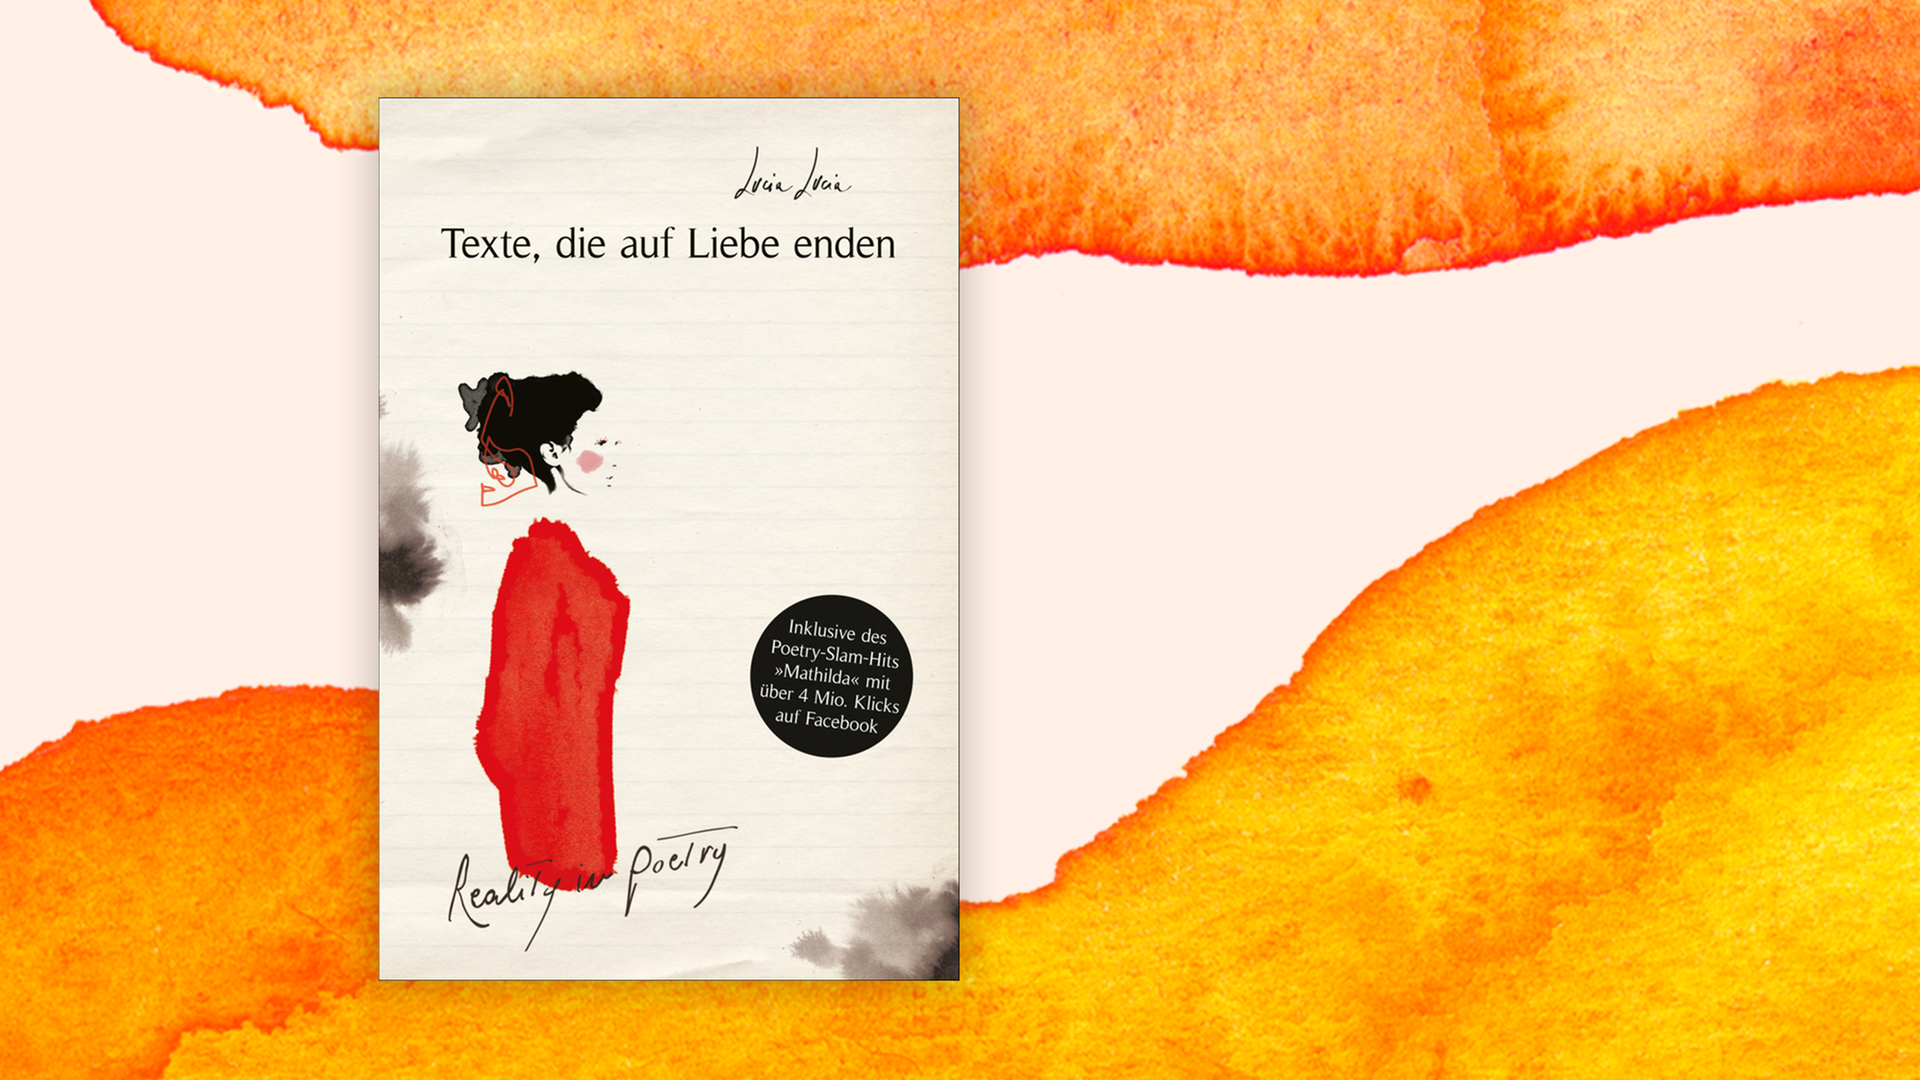 Zu sehen ist das Cover des Buches "Texte, die auf Liebe enden. Reality in Poetry" von der Poetry-Slammerin Lucia Lucia.